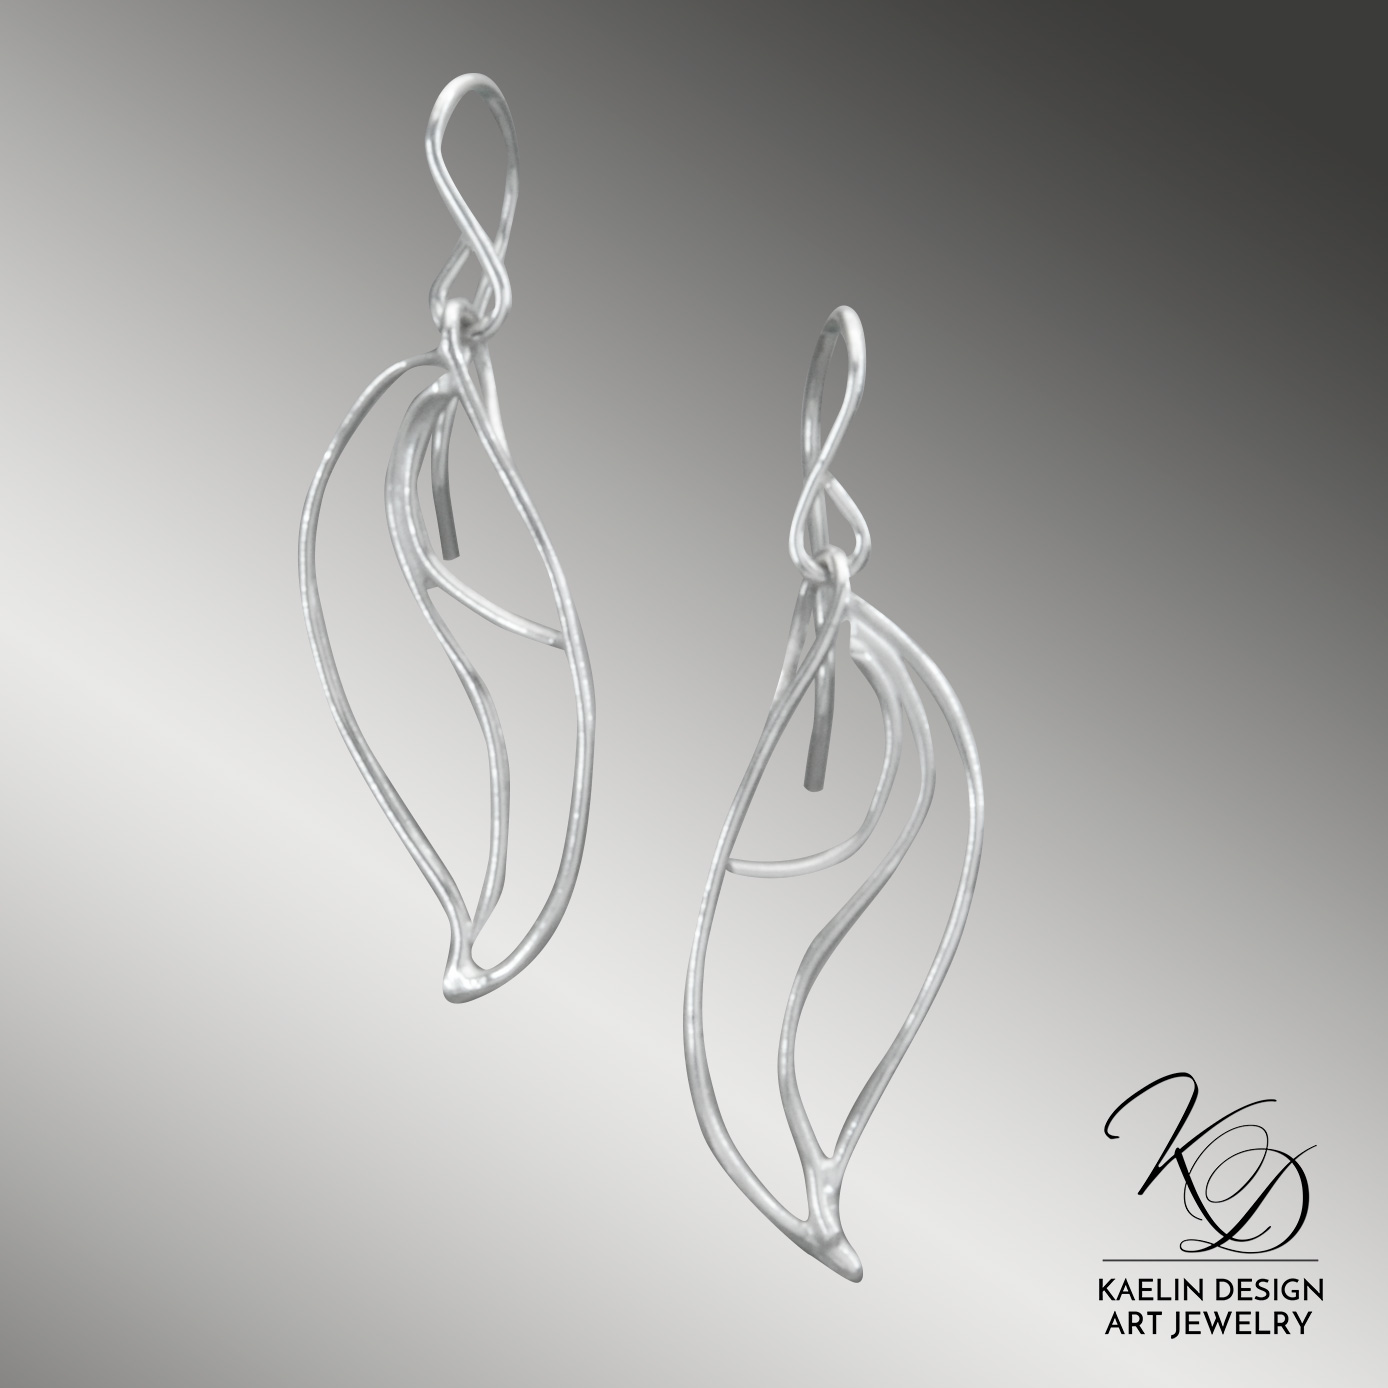 Caspian Sterling Silver Hand Forged Art Jewelry Earrings by Kaelin Design